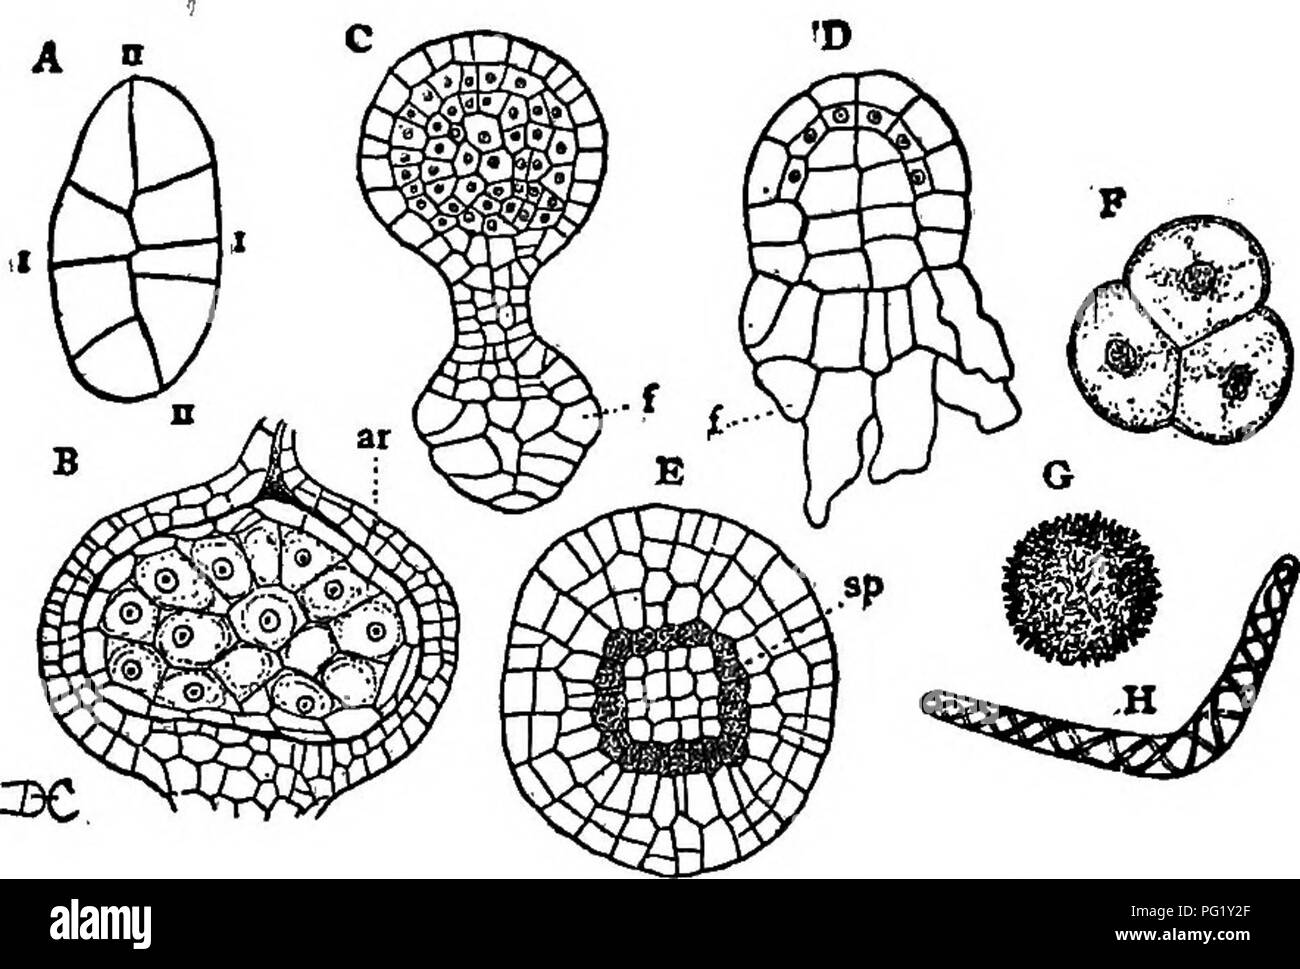 . Conferencias sobre la evolución de las plantas. La botánica; Plantas. Los musgos y LIVEEWOKTS 109 El sporophyte en Riccia es muy simple, recordando que de Coleochsete (Fig. 10, C) entre las algas, y no hay ninguna dificultad en entender cómo un sporophyte del tipo de que en Riccia pueden haberse originado a partir de Coleochsete.. Fig. 28 (Desarrollo del esporofito en Hepaticse). - A, em--bryo yonng sporophyte de Targionia ; I, II, de la primera división de paredes en el Fertil- izado huevo; B, sección longitudinal del esporofito joven de Riccia, in- cluida en el archegonium, ar; todas las células, excepto Foto de stock